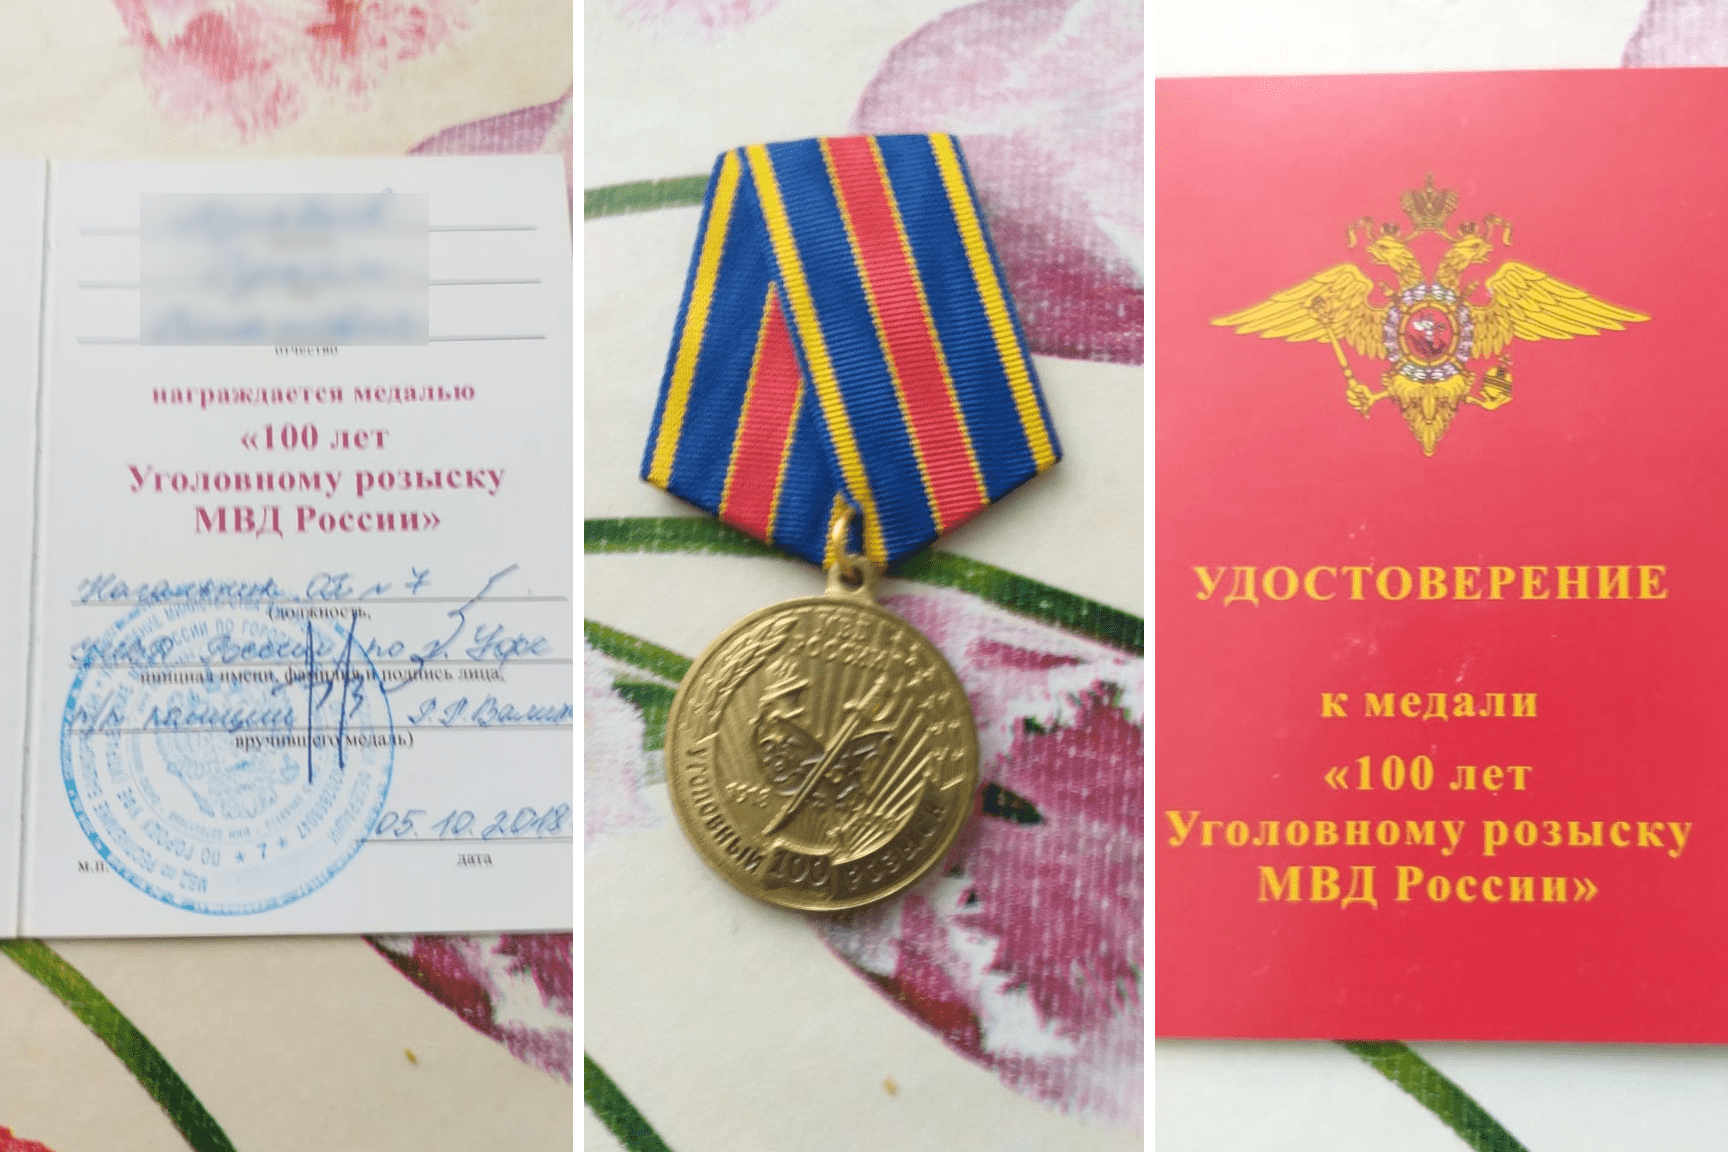 Медаль оперативник получил в октябре прошлого года